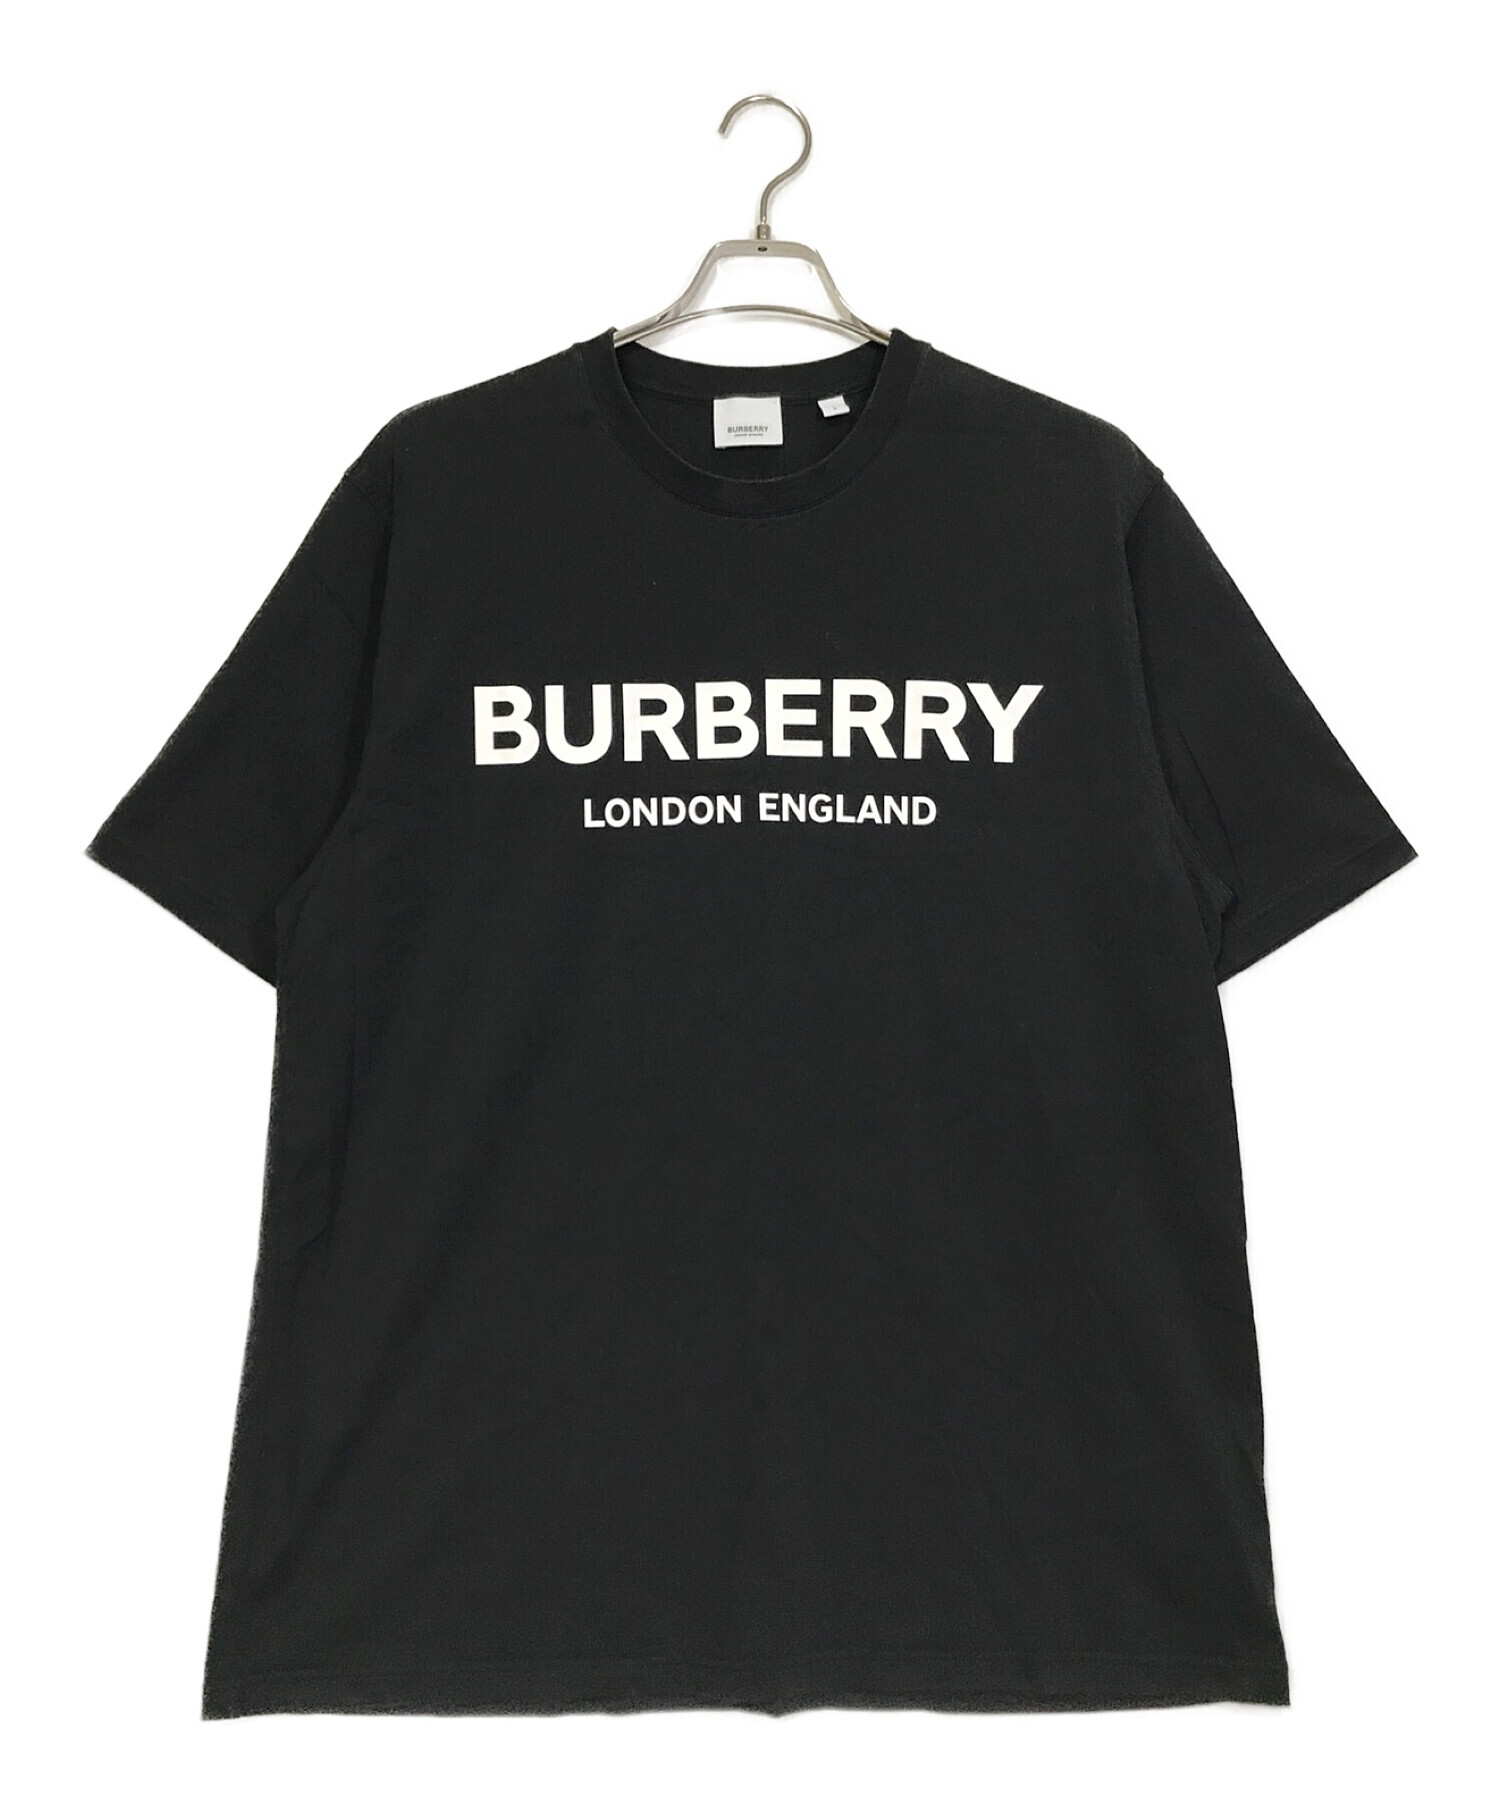 超特価】 BURBERRY LONDON ENGLAND ロゴ クルーネック Tシャツ aob.adv.br